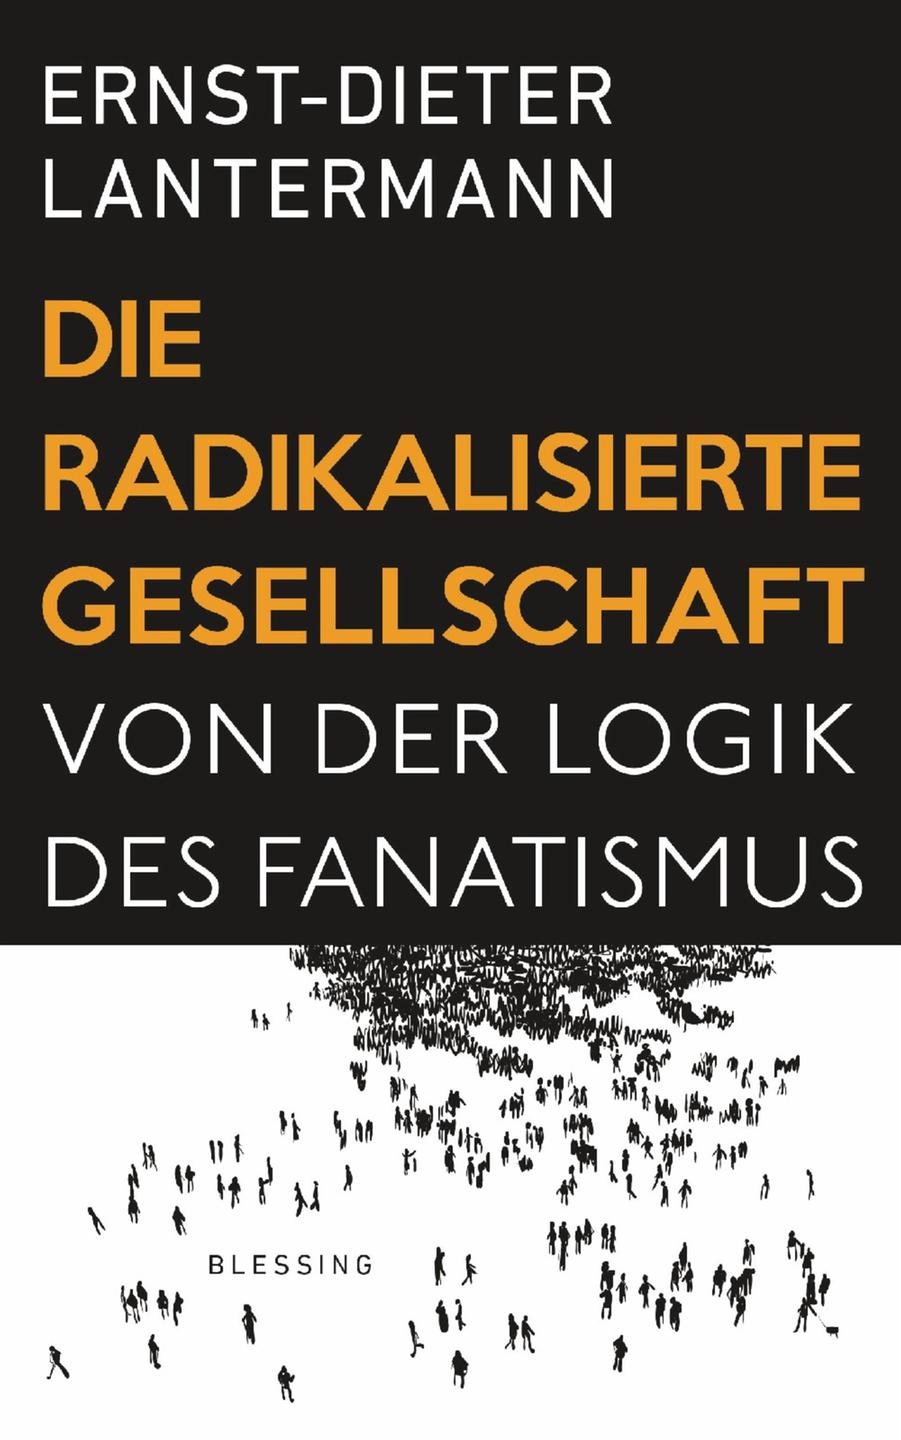 Prof. Ernst-Dieter Lantermann: "Die Radikalisierte Gesellschaft. Von der Logik des Fanatismus"